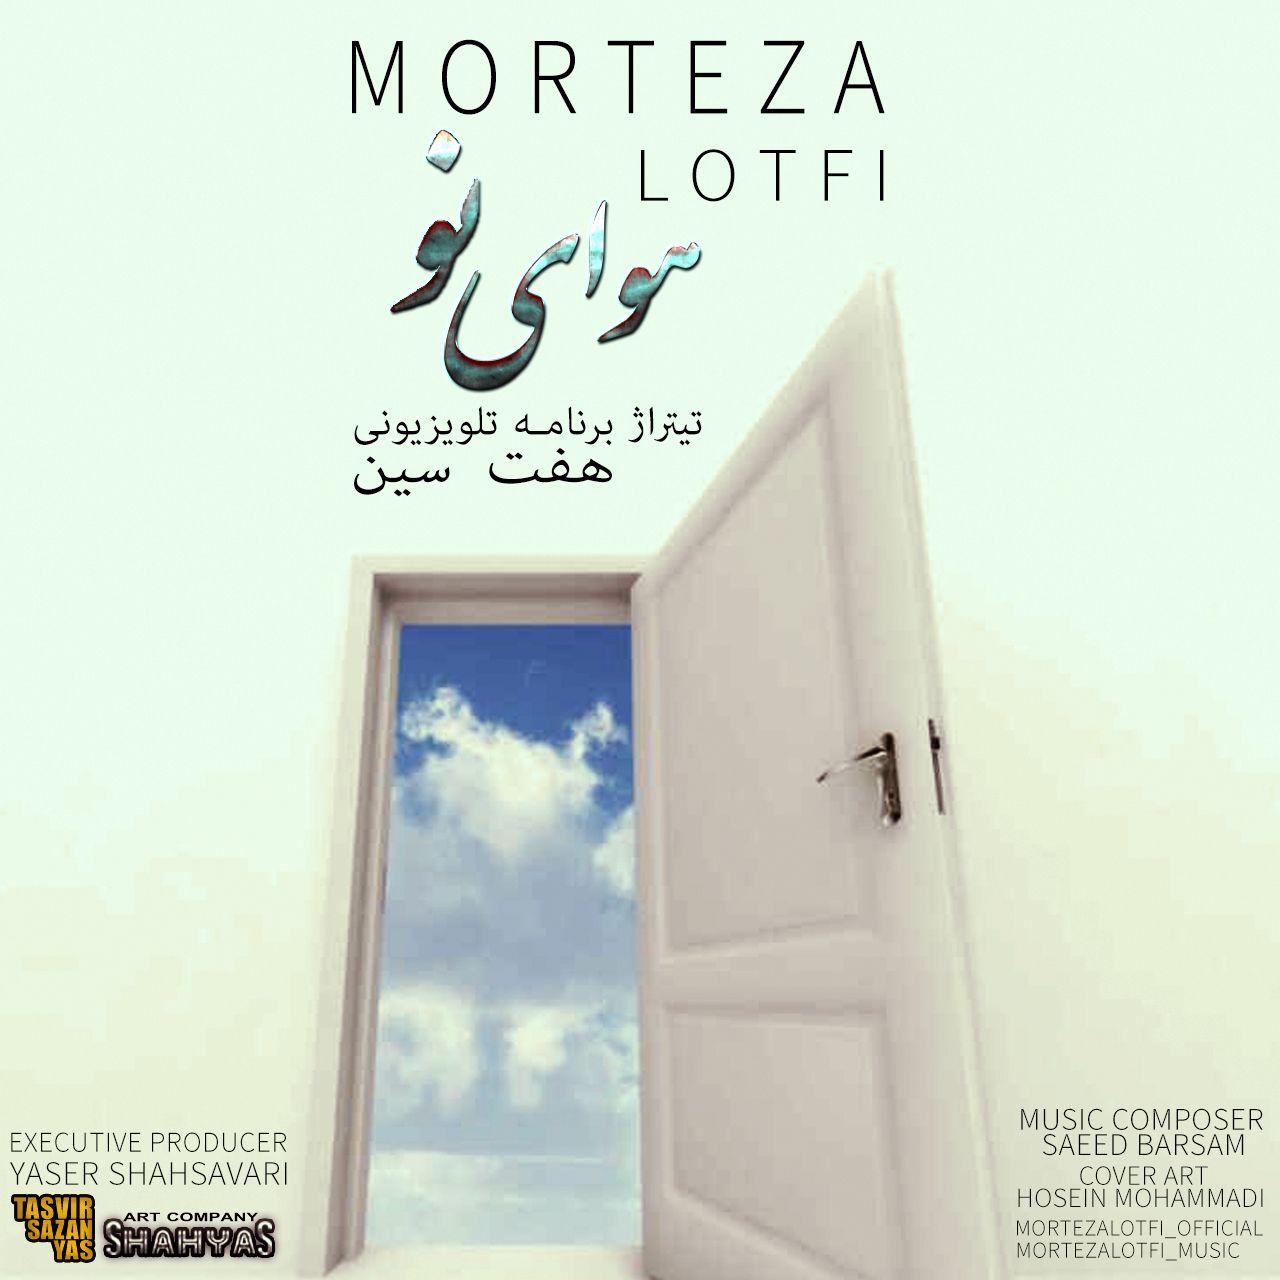  دانلود آهنگ جدید مرتضی لطفی - هوای تو | Download New Music By Morteza Lotfi - Havaye To